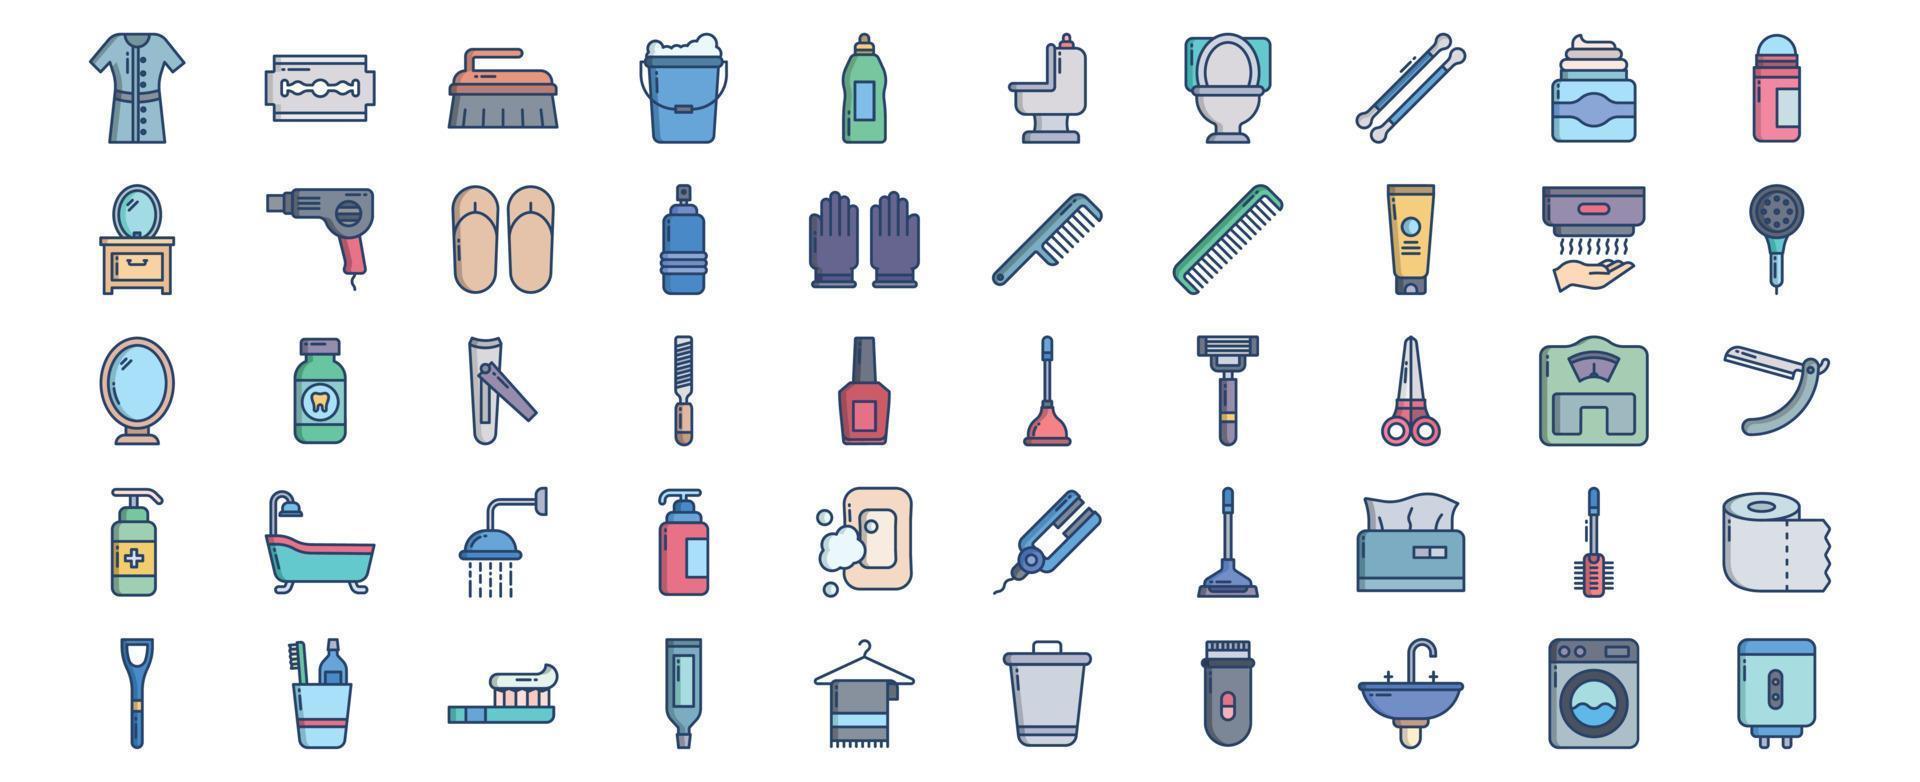 verzameling van pictogrammen verwant naar badkamer en toilet accessoires, inclusief pictogrammen Leuk vinden nn en meer. vector illustraties, pixel perfect reeks